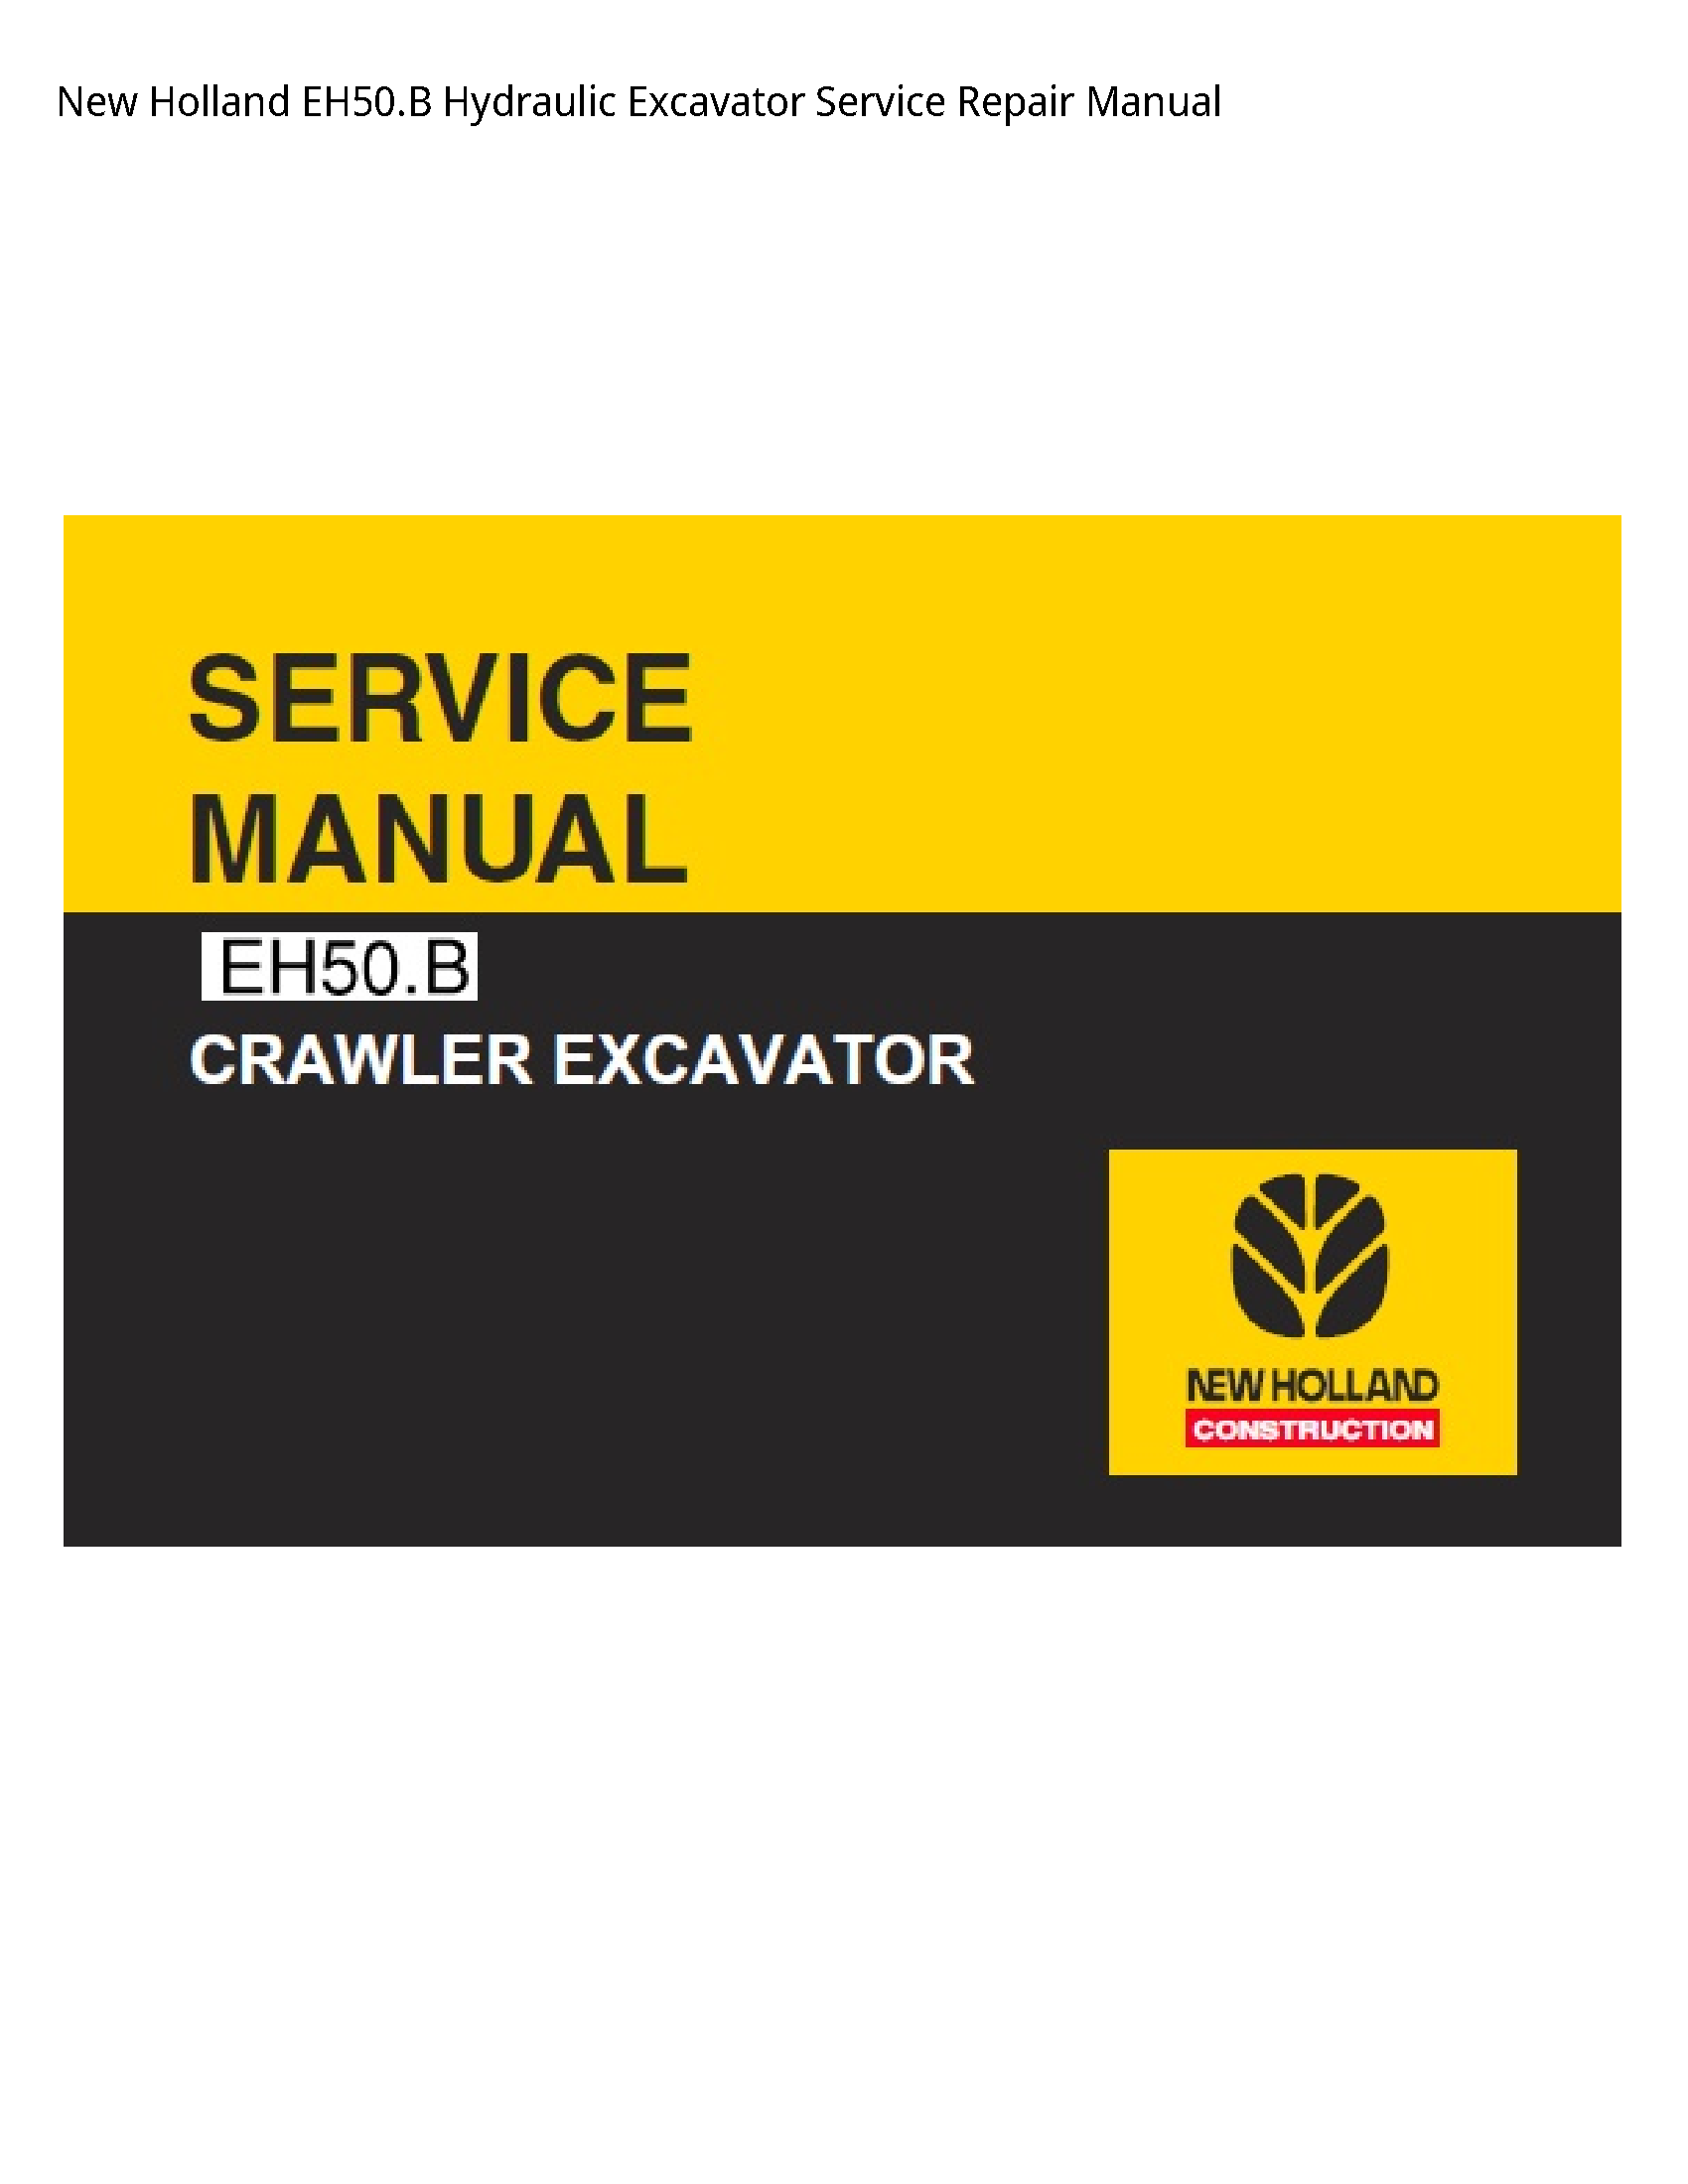 New Holland EH50.B Hydraulic Excavator manual